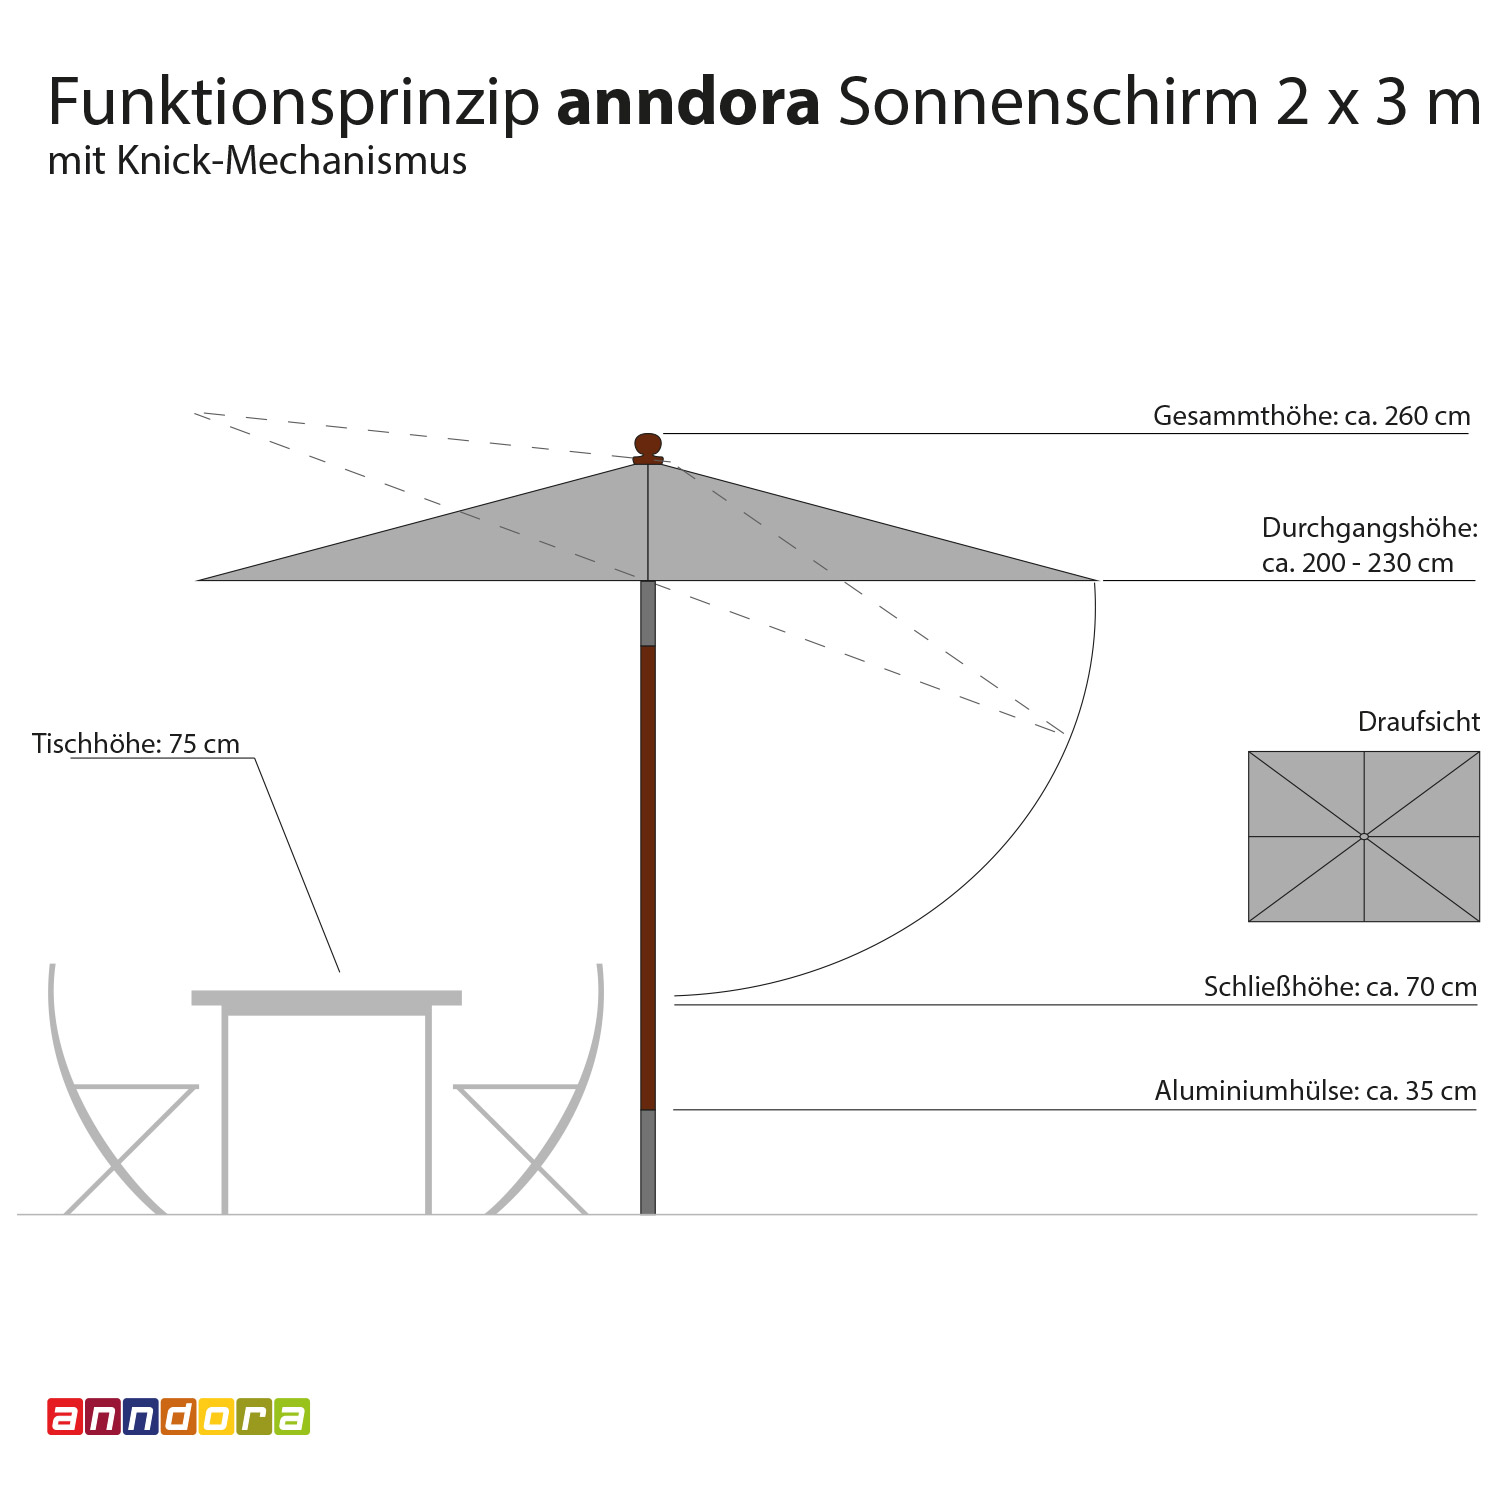 anndora Sonnenschirm 2x3m Balkonschirm Landhausschirm rechteckig knickbar - Farbwahl - 2